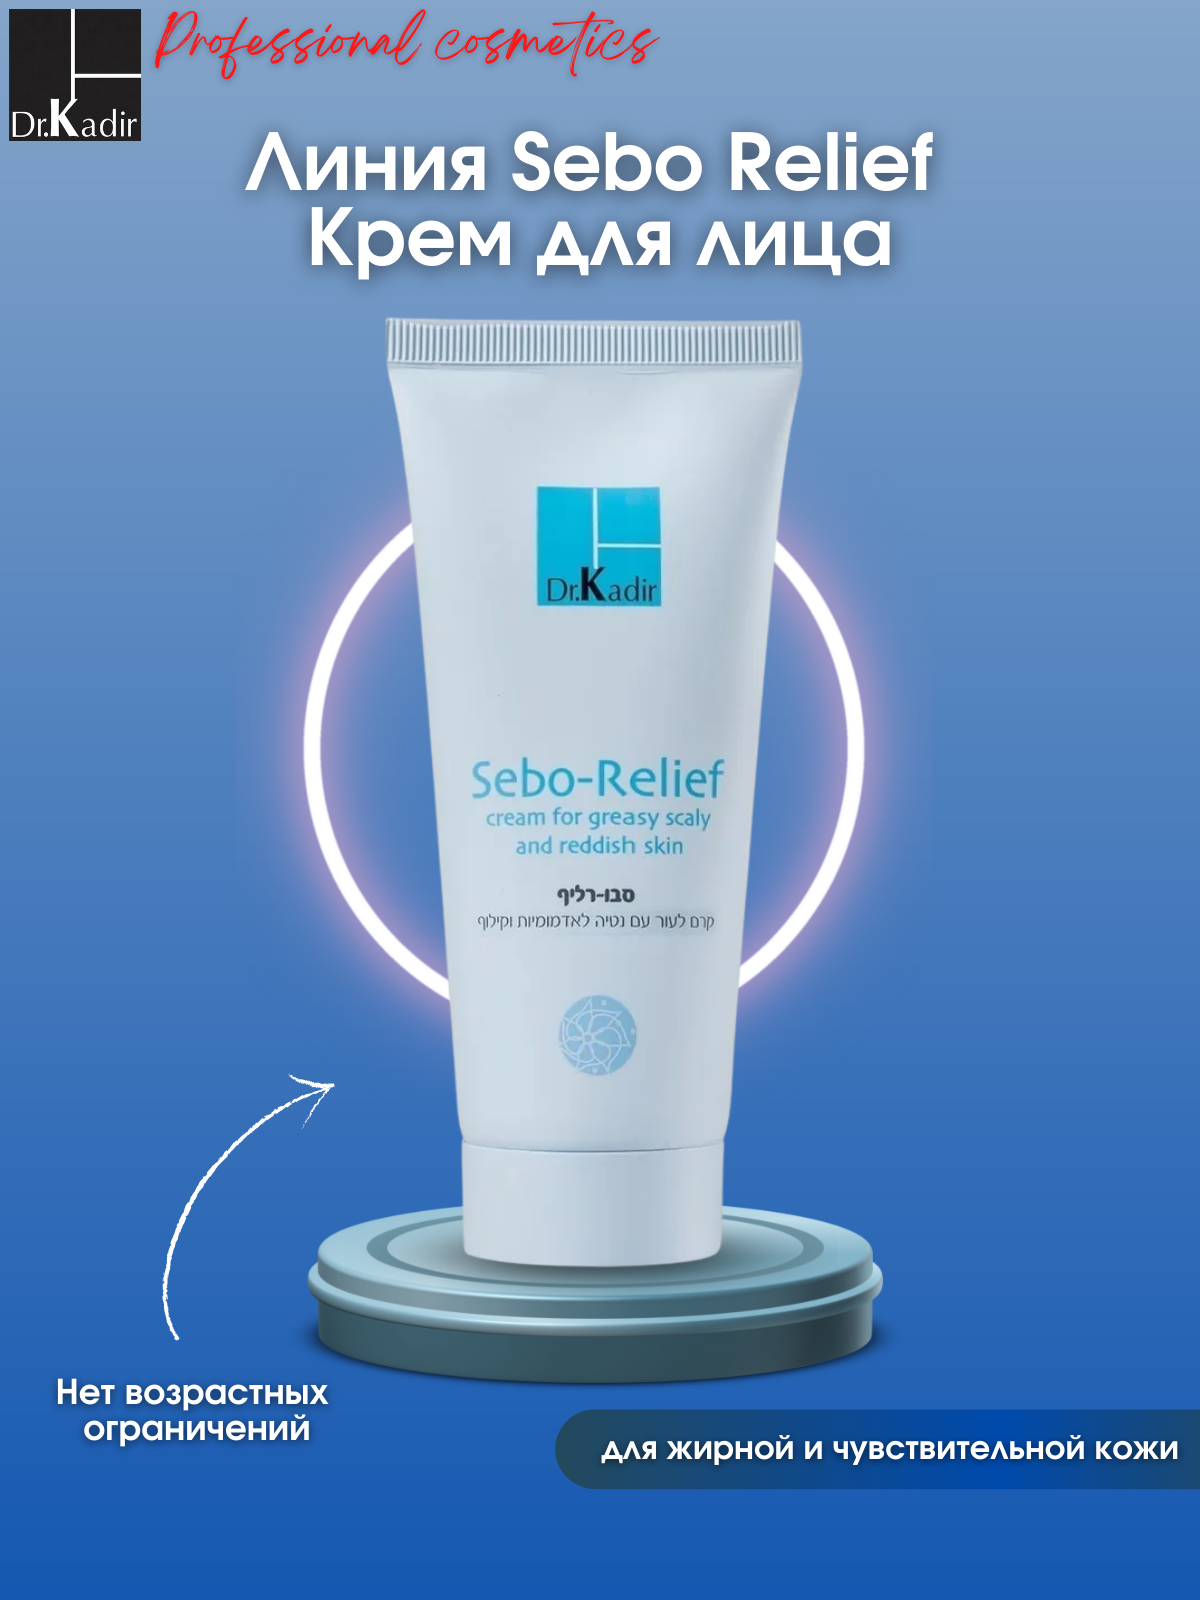 Dr. Kadir Sebo-relief cream Крем для жирной кожи